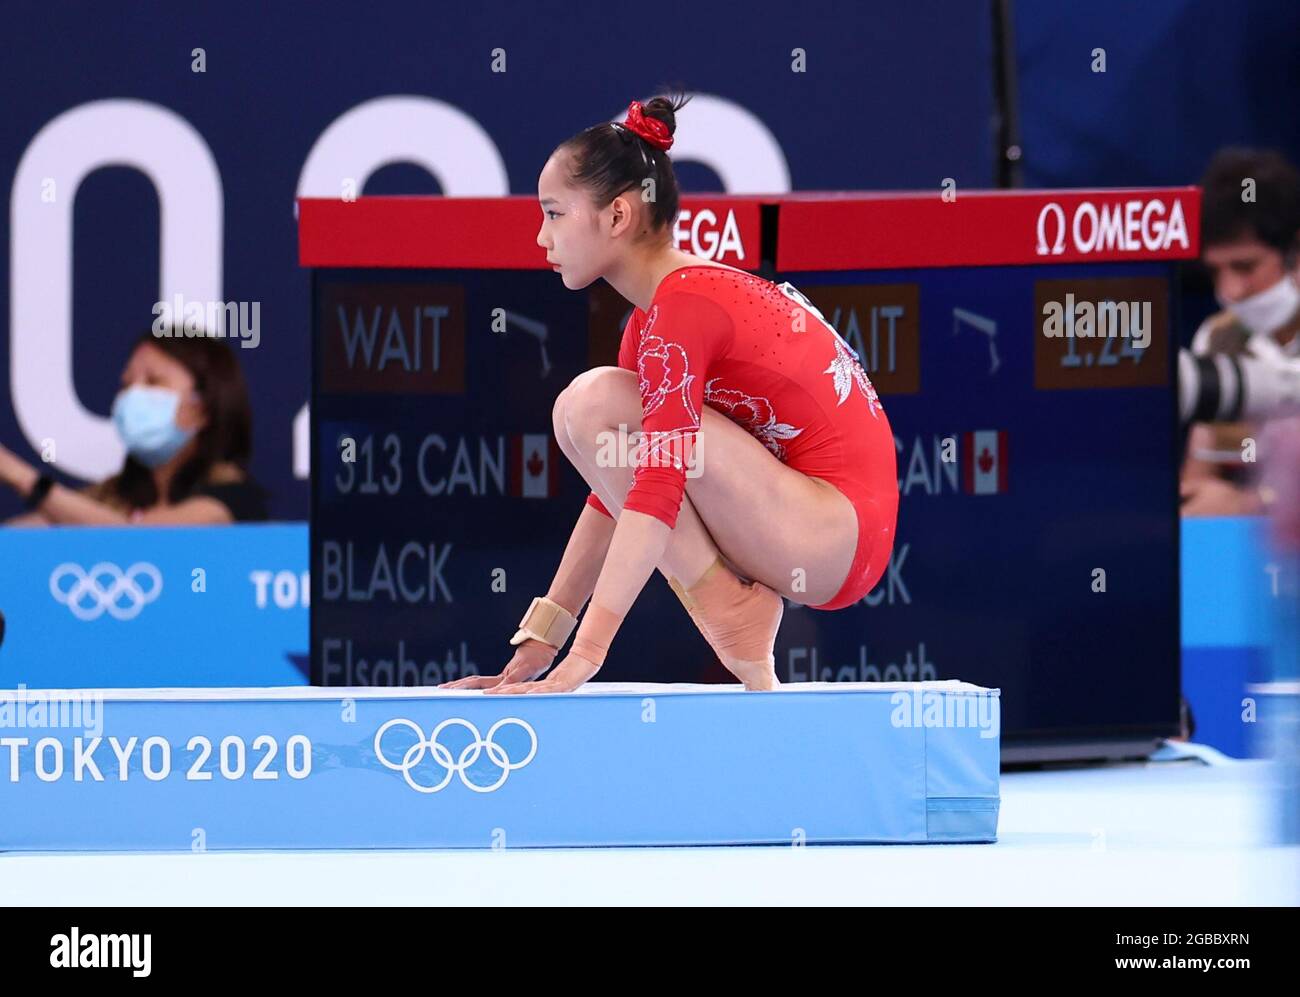 (210803) -- TOKIO, 3. August 2021 (Xinhua) -- Tang Xijing aus China reagiert während des Finales der Frauen im Kunstturnen-Balancier bei den Olympischen Spielen 2020 in Tokio, Japan, am 3. August 2021. (Xinhua/Lan Hongguang) Stockfoto